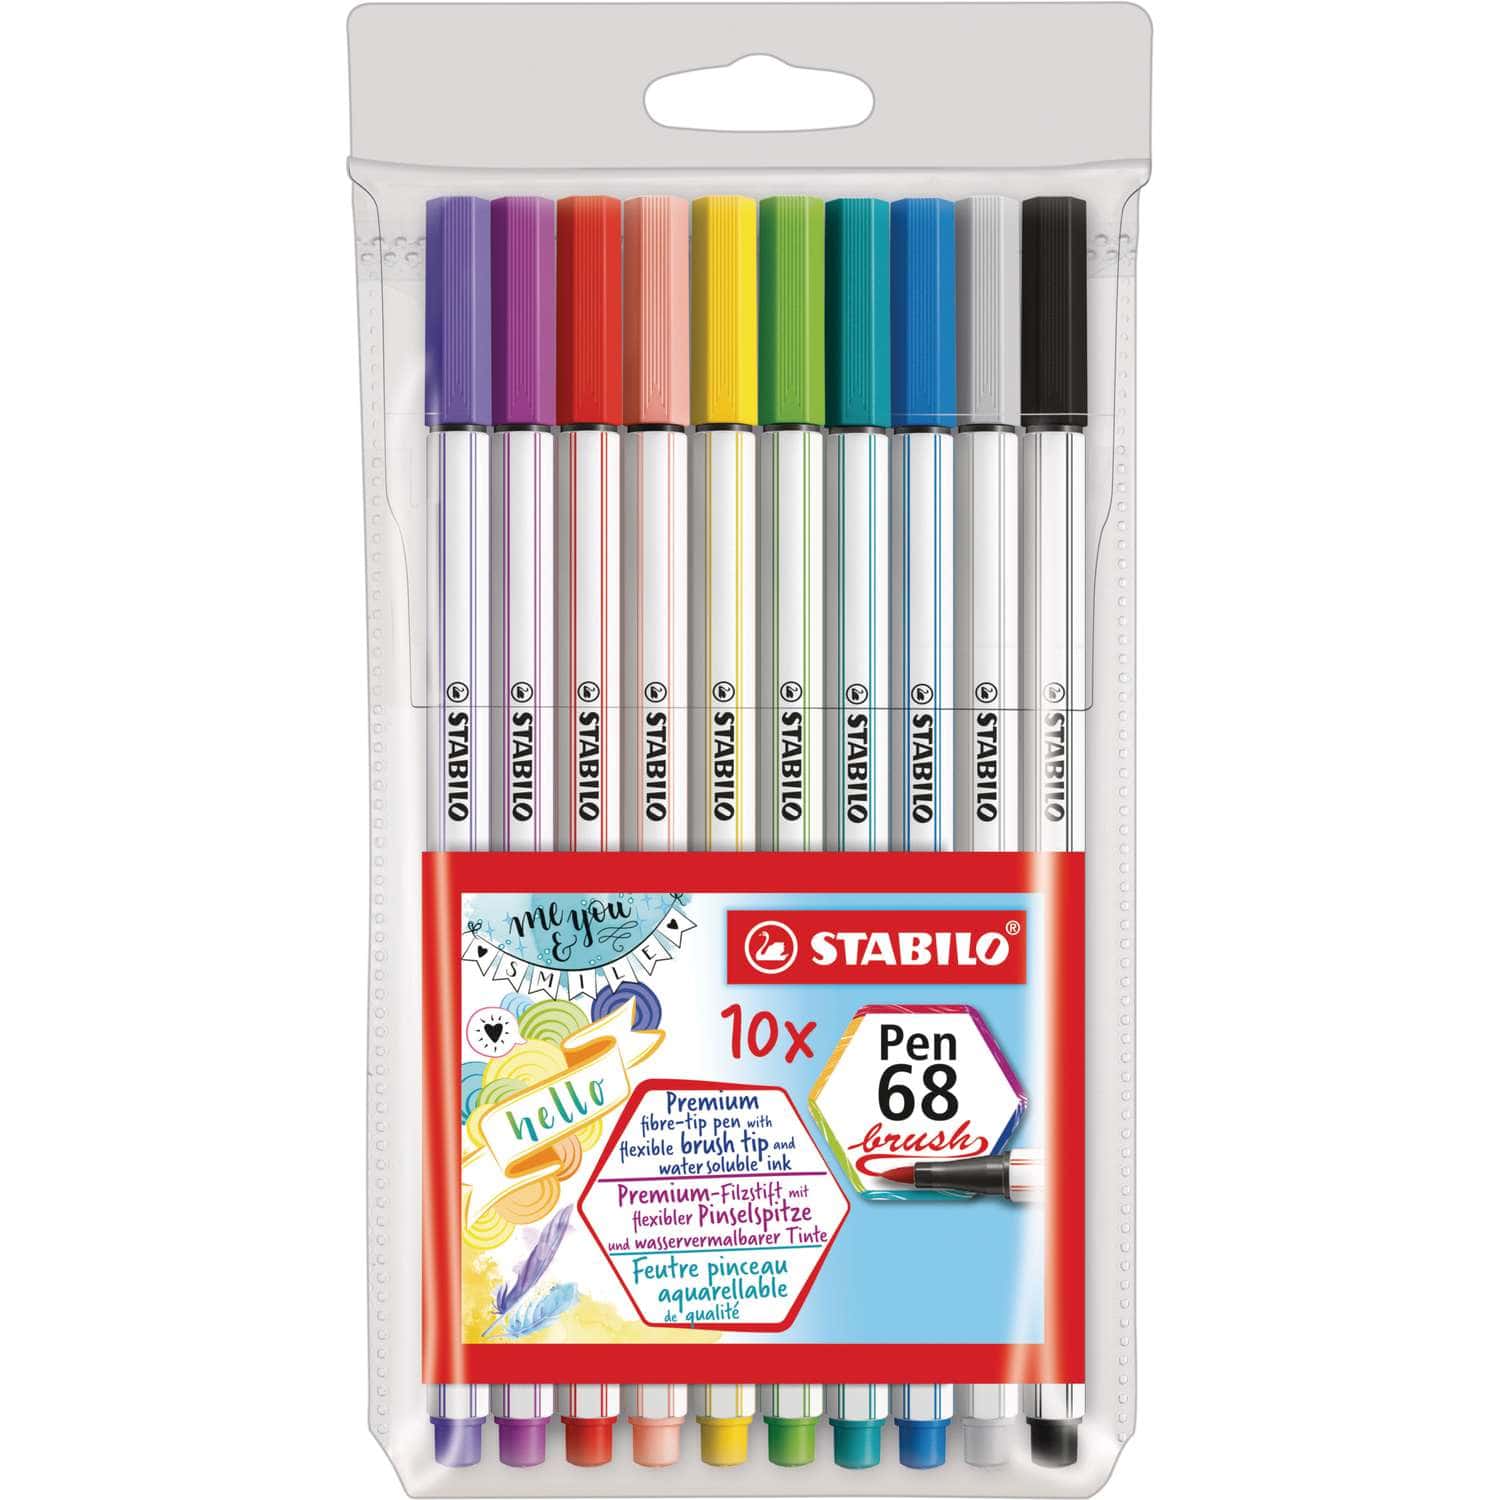 STABILO®, Pen 68 brush pens — plastic box sets